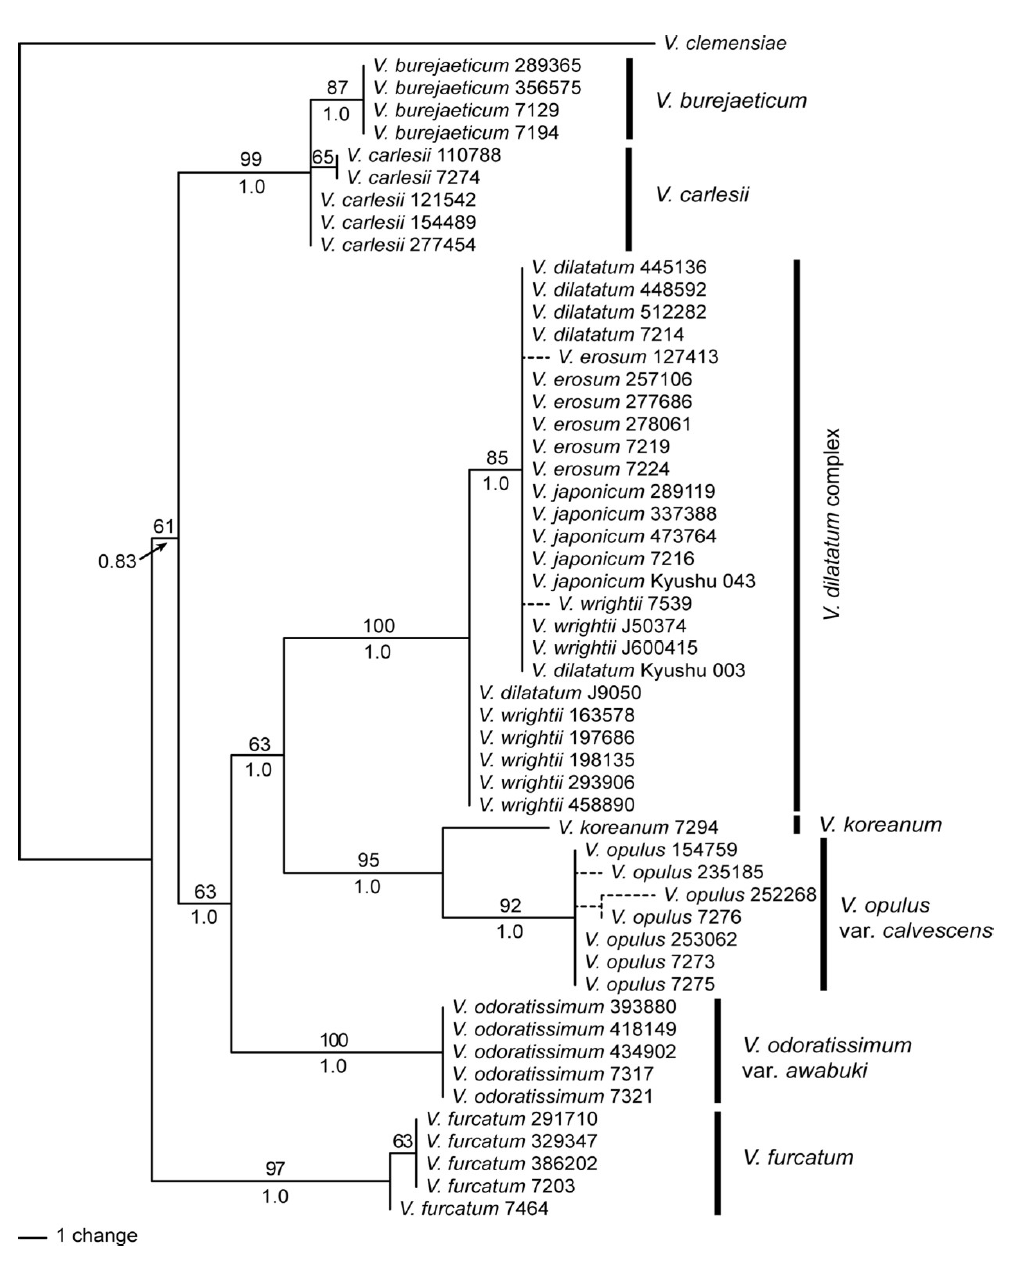 선행연구: 한국산 Viburnum 속의 cpDNA 염기서열(rbcL, matK, psbA-trnH) 계통 분석 결과(Choi et al., 2018). 가막살나무 복합체 내의 변이가 거의 없는 것으로 나타남